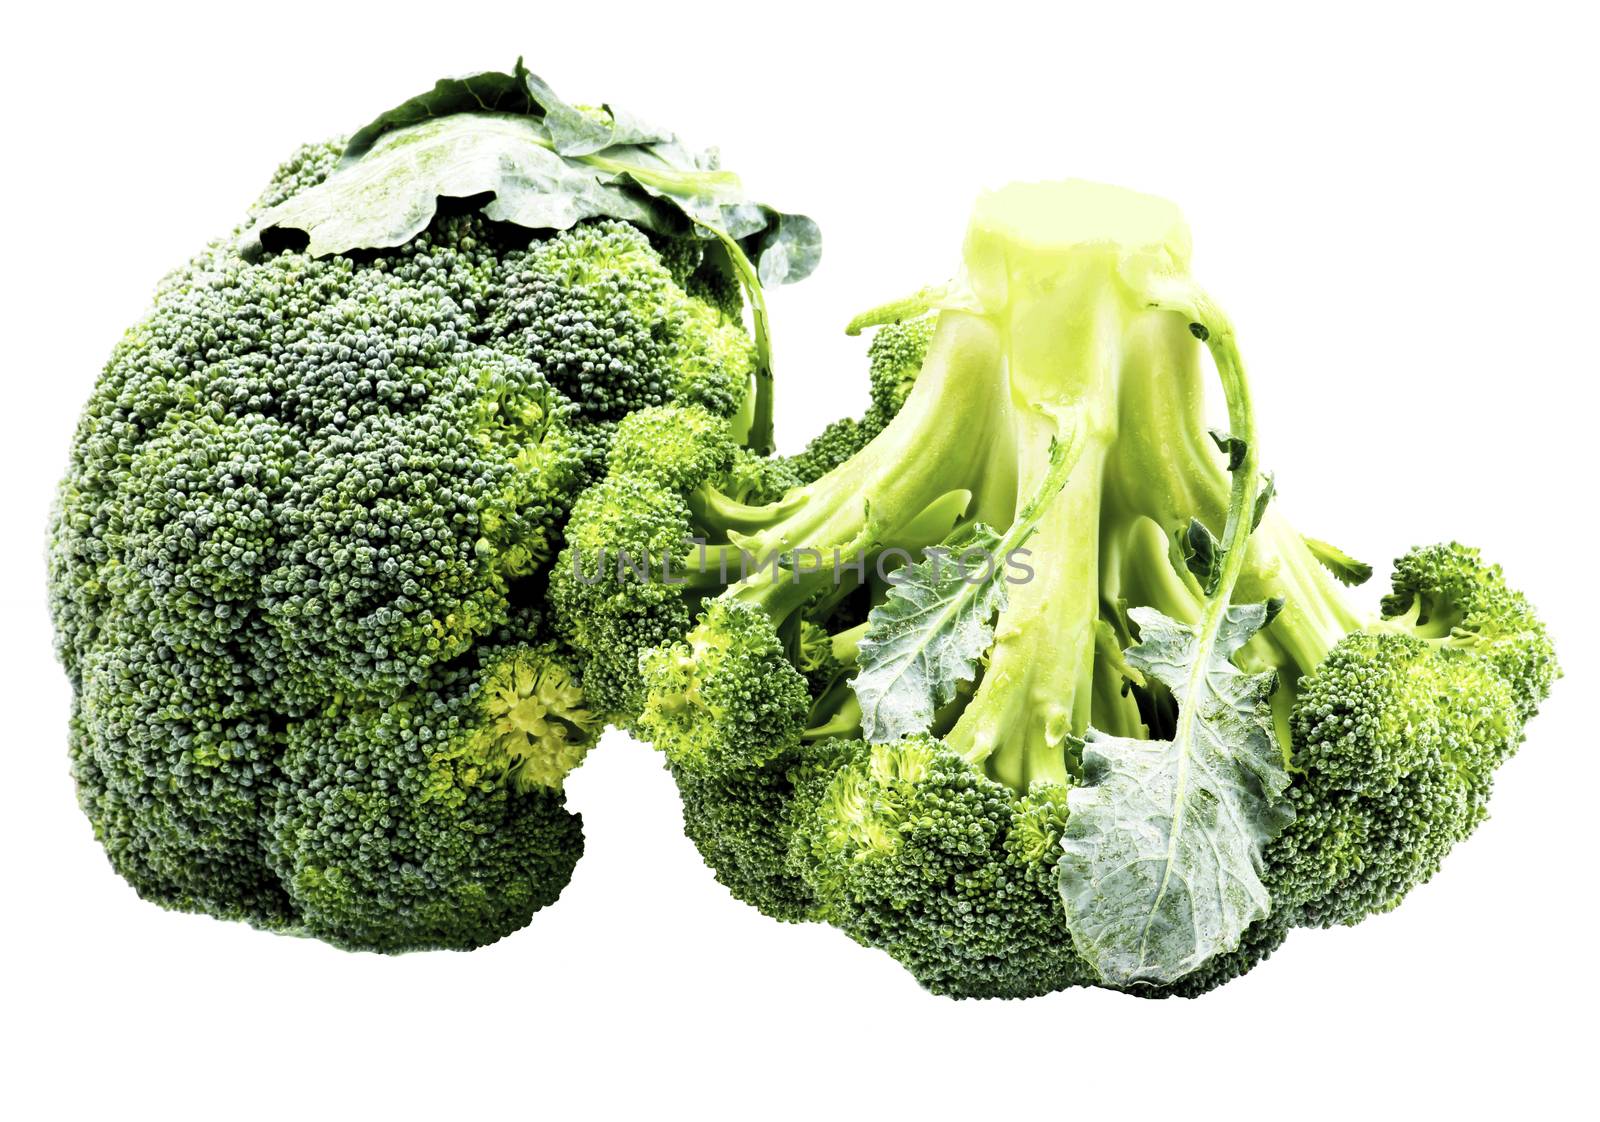 Two Raw Broccoli by zhekos